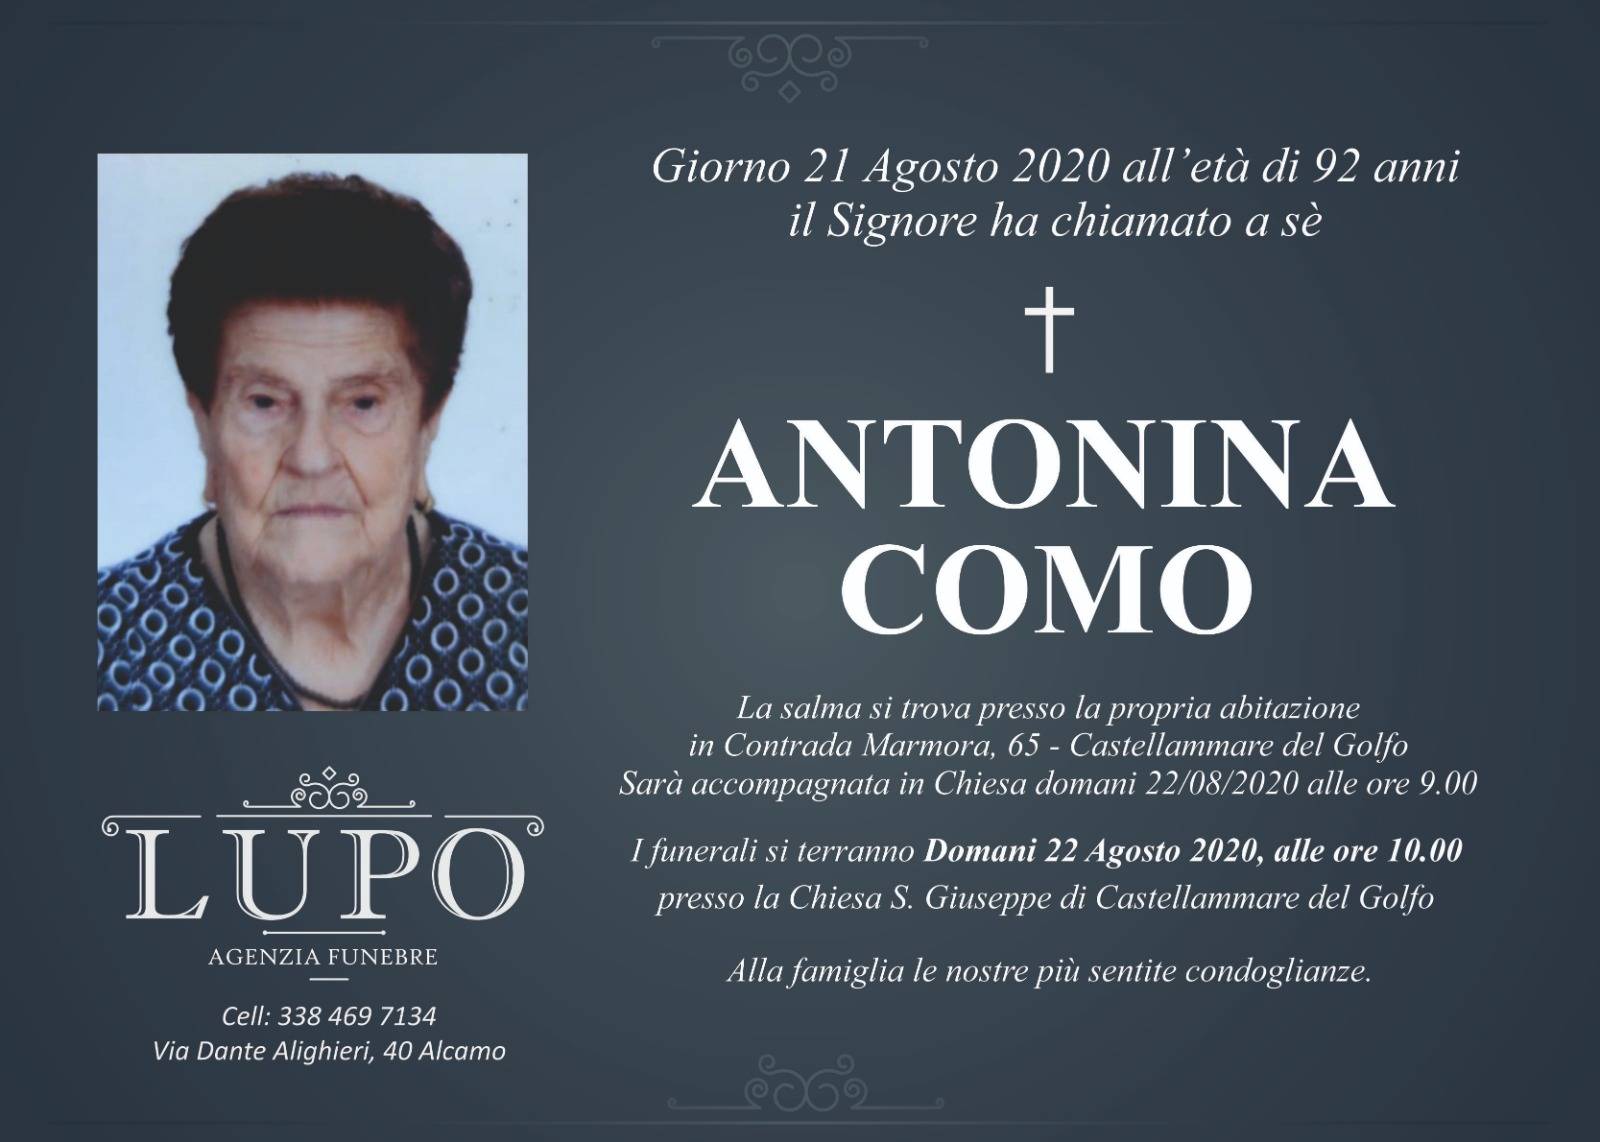 Antonina Como